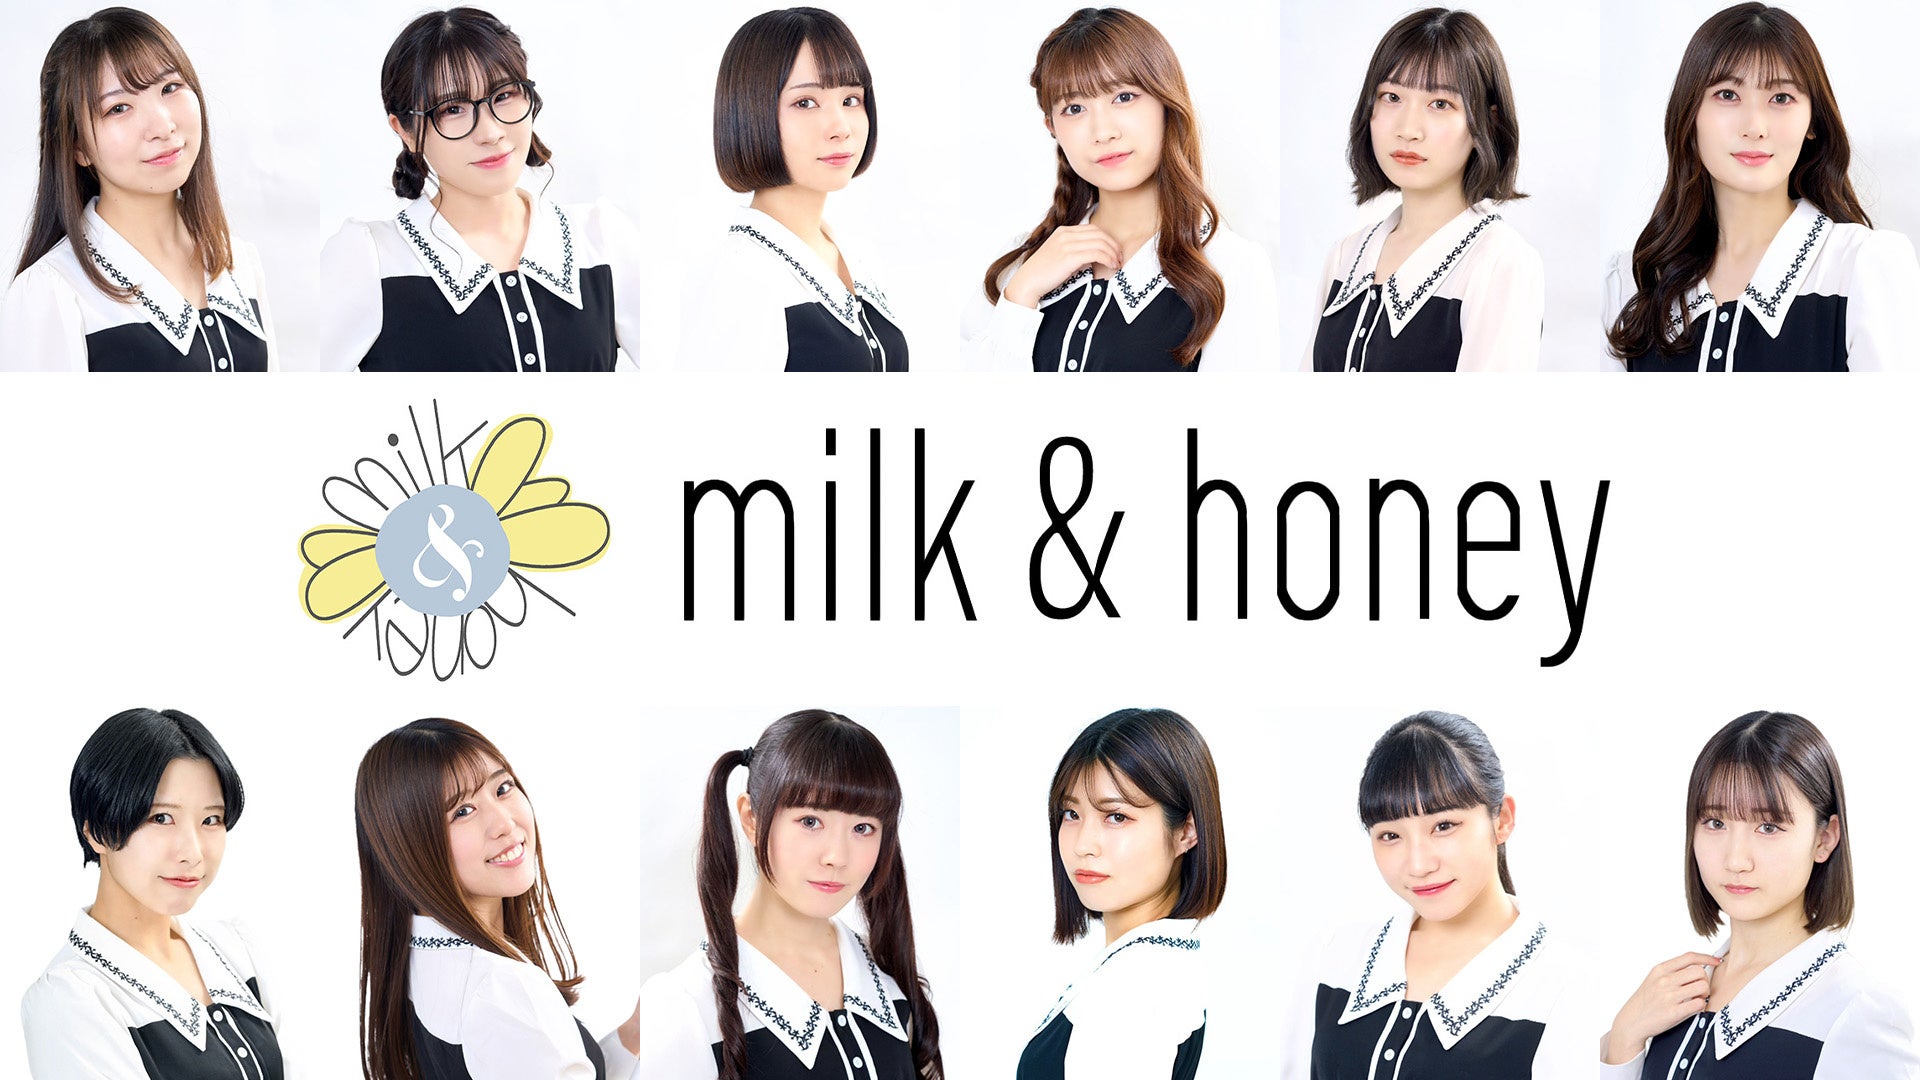 岡本真夜プロデュースアイドル「milk&honey」が活動開始のサブ画像1_milk&honey グループ写真